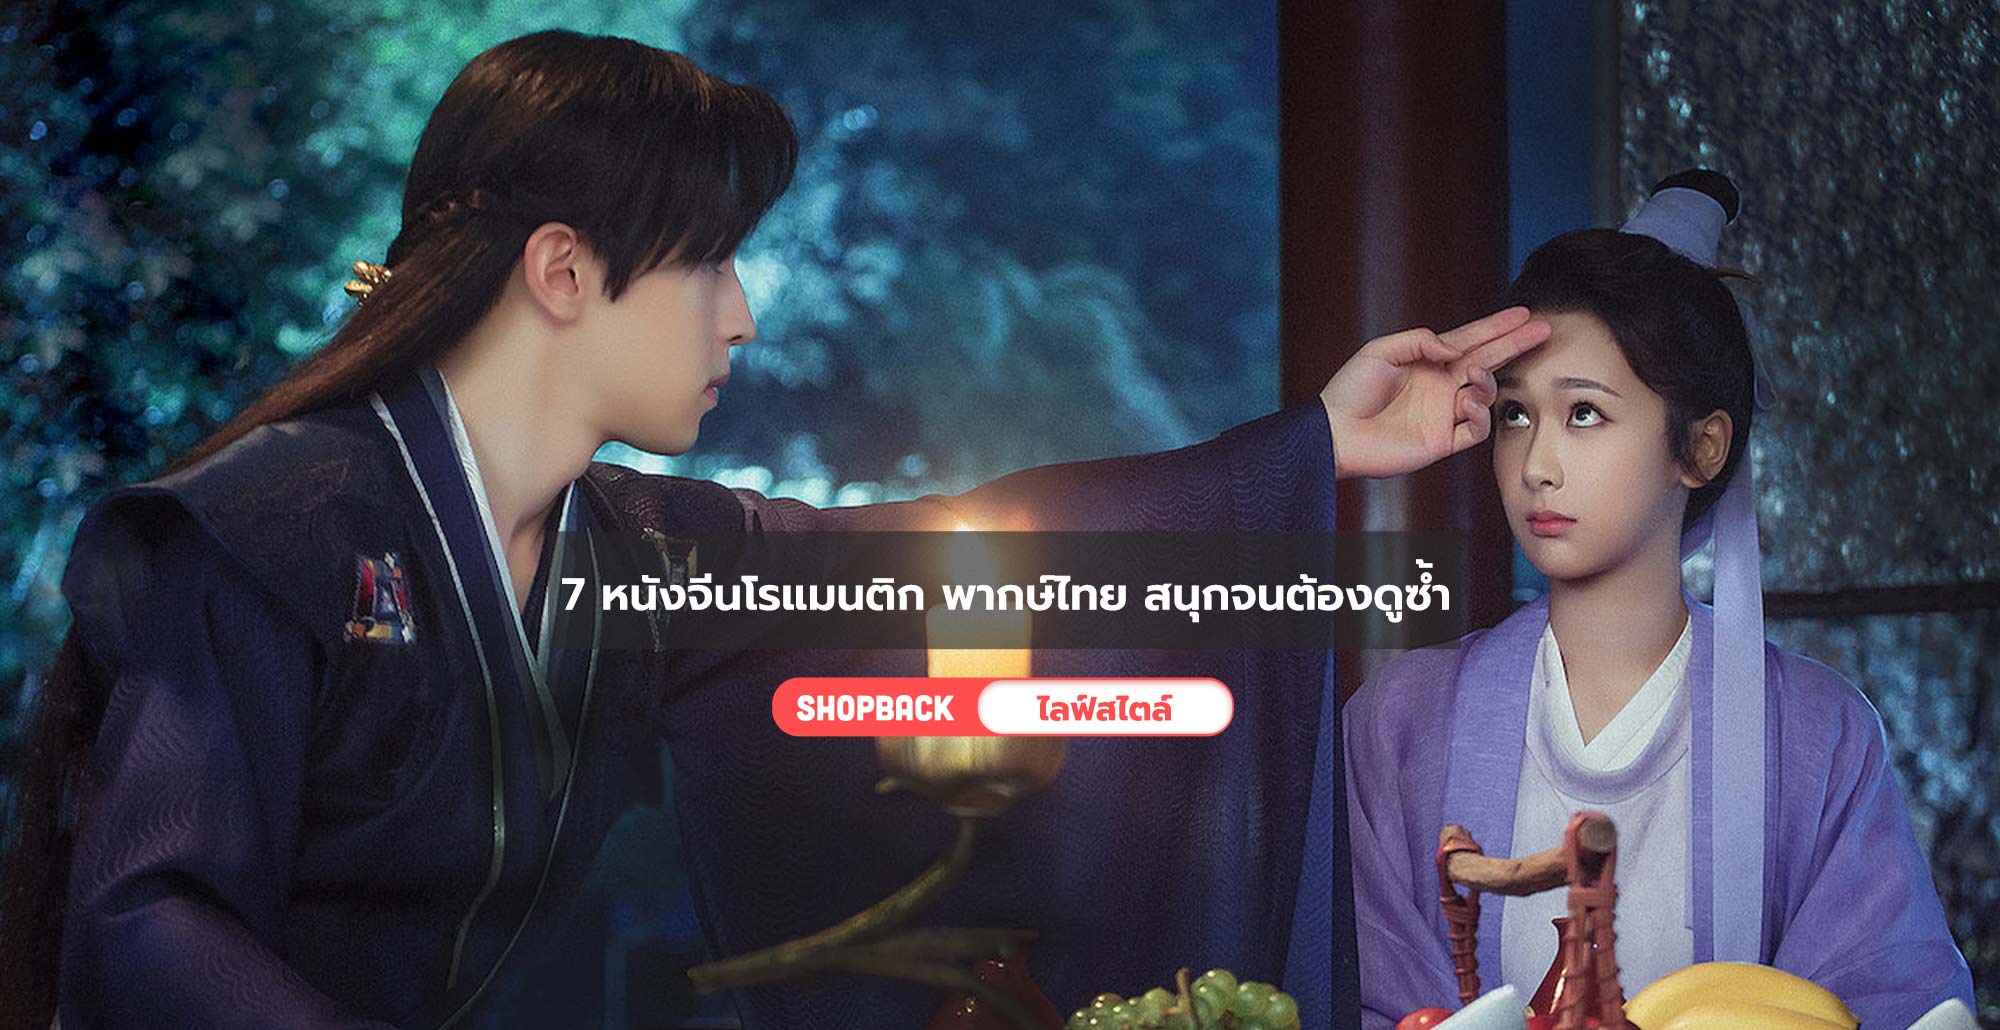 อัปเดต 7 หนังจีนโรแมนติก พากษ์ไทย สนุกจนต้องดูซ้ำ 2020